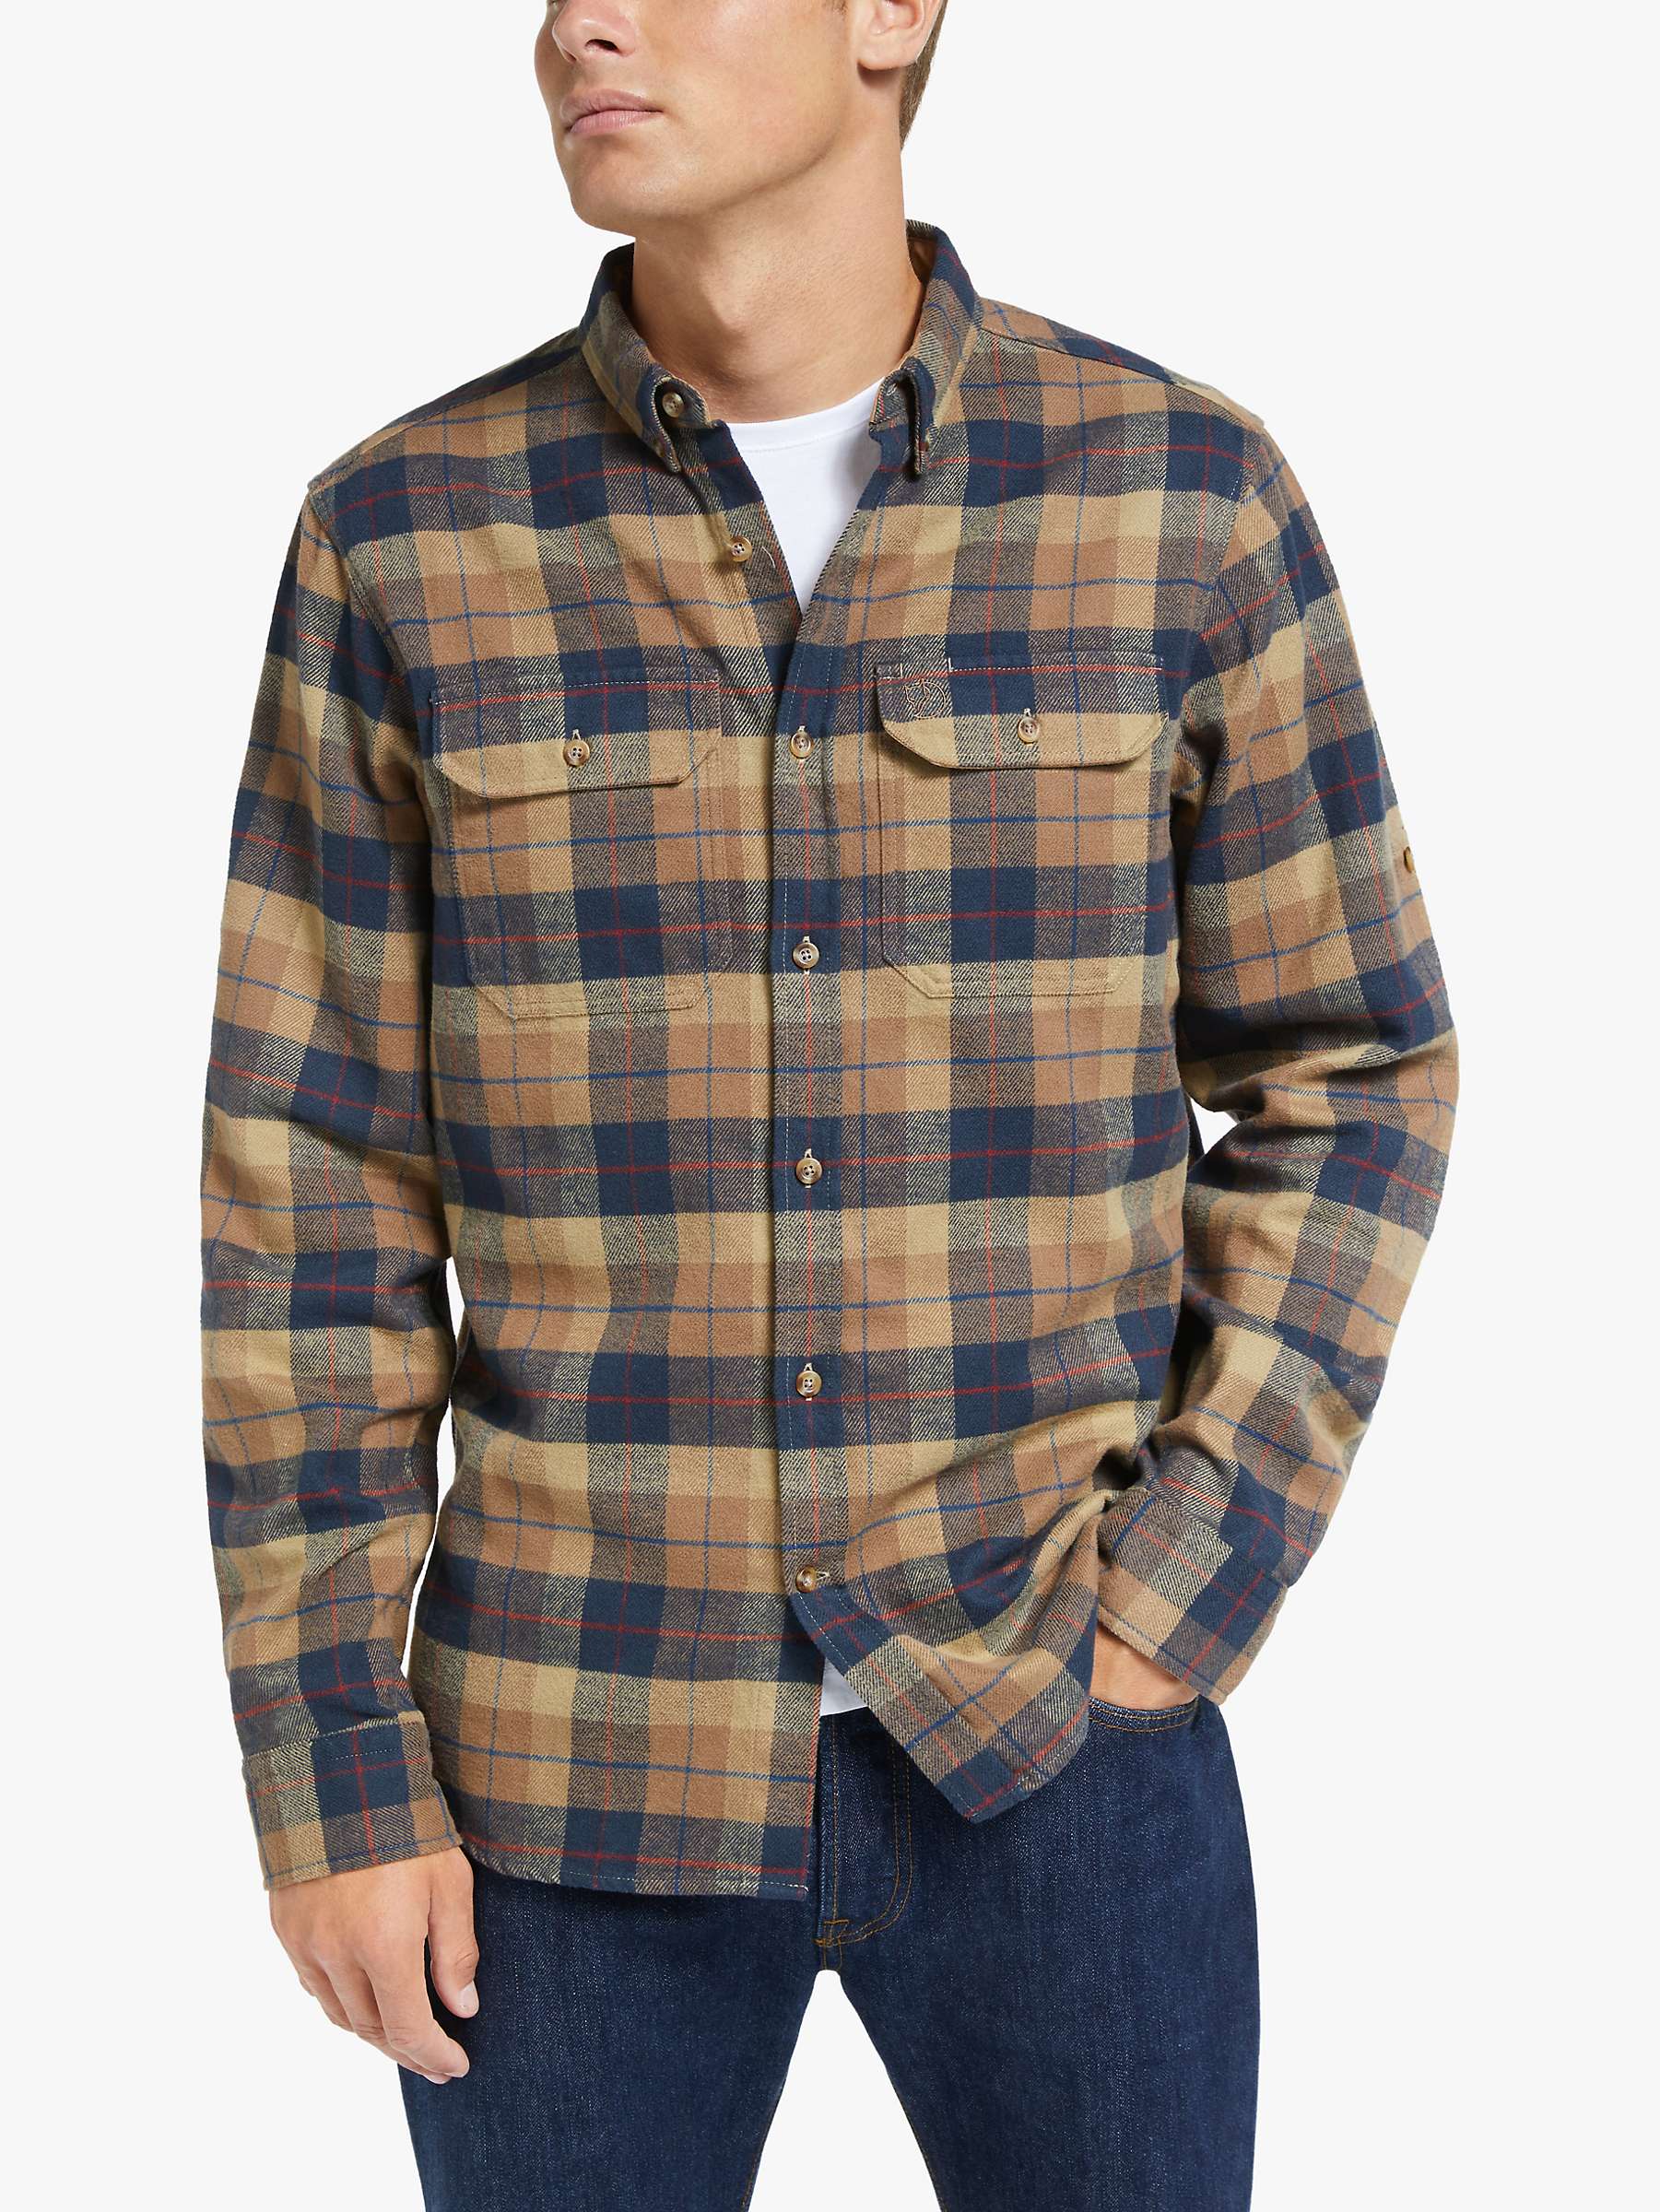 大人も着やすいシンプルファッション OVY Heavy Flannel Check Shirts ecousarecycling.com